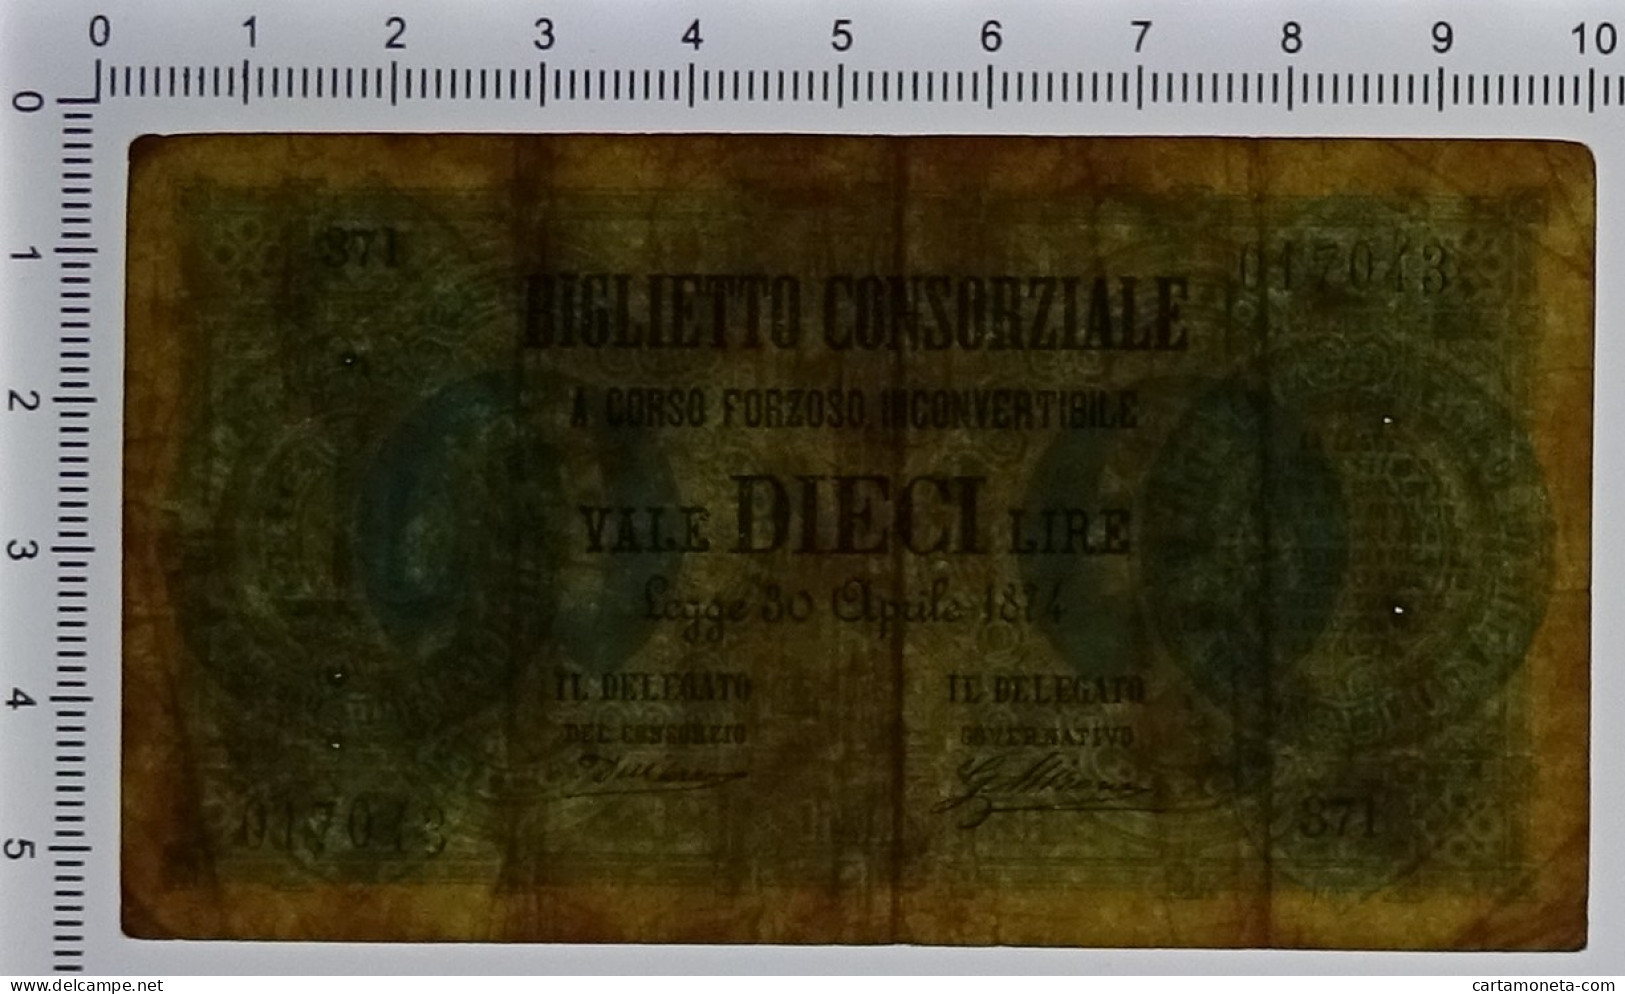 10 LIRE BIGLIETTO CONSORZIALE REGNO D'ITALIA 30/04/1874 BB - Biglietti Consorziale